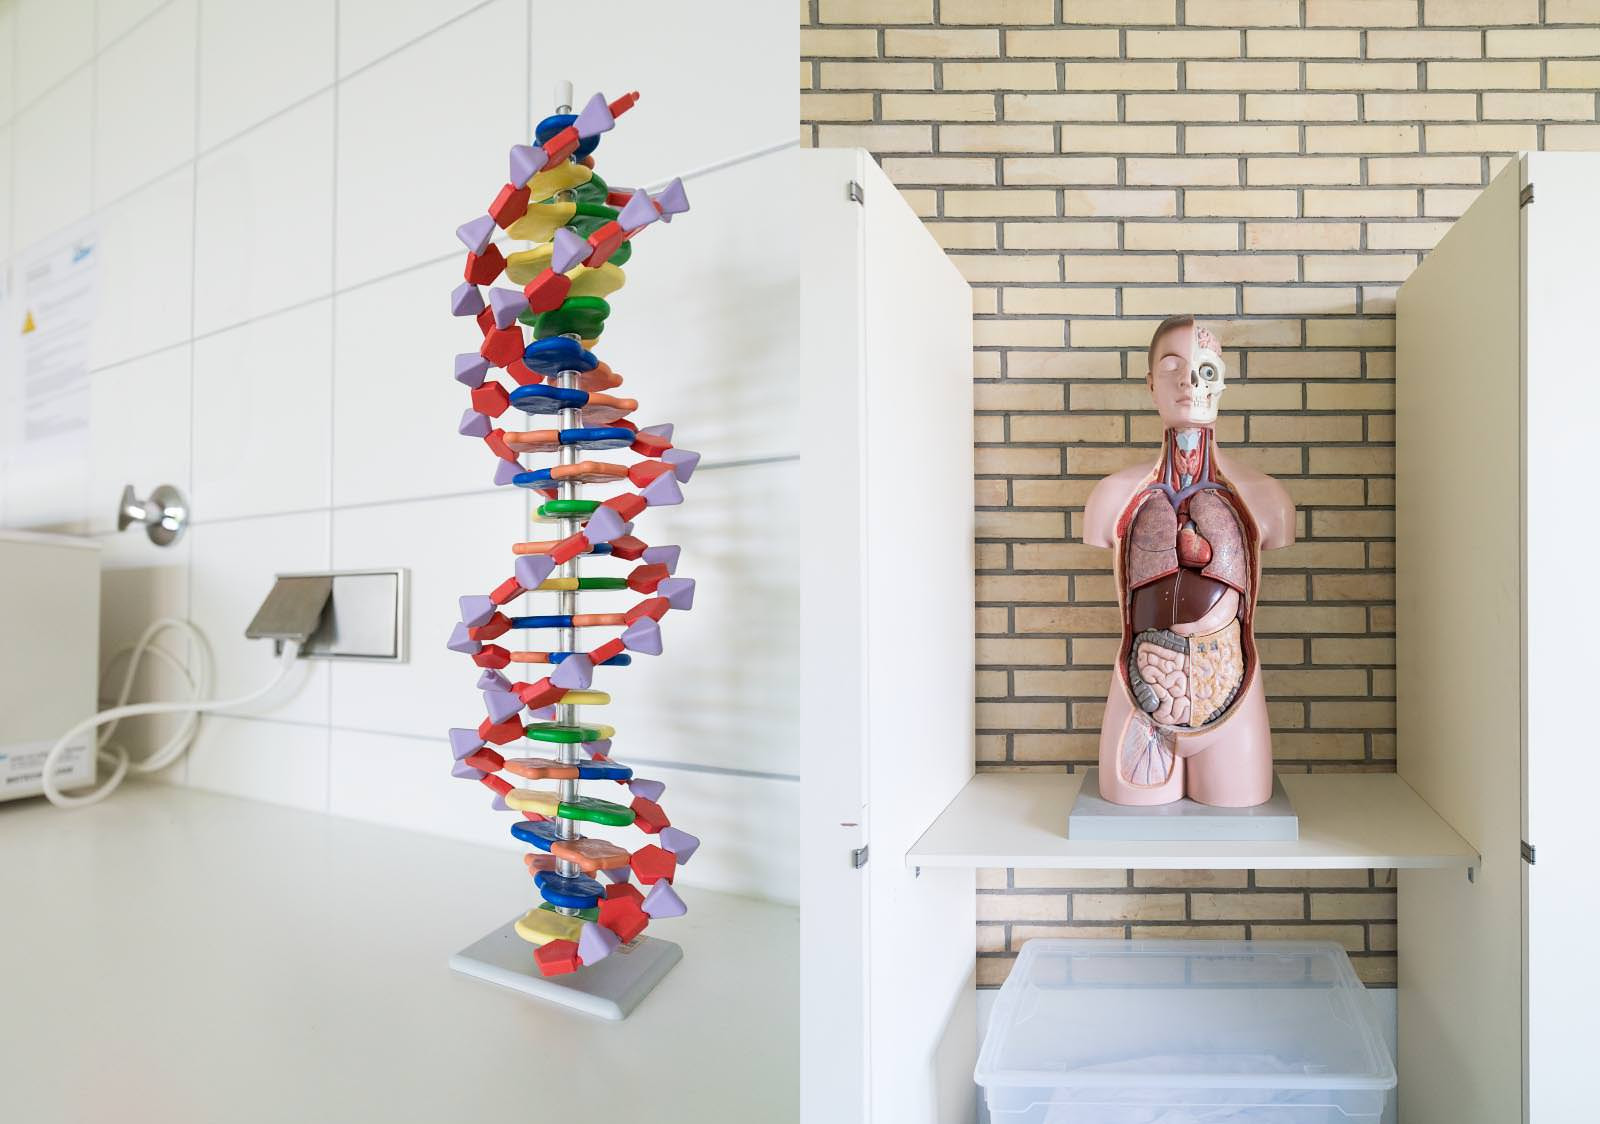 DNA Strang auf der linken Seite. Rechts an Anatomie Modell.